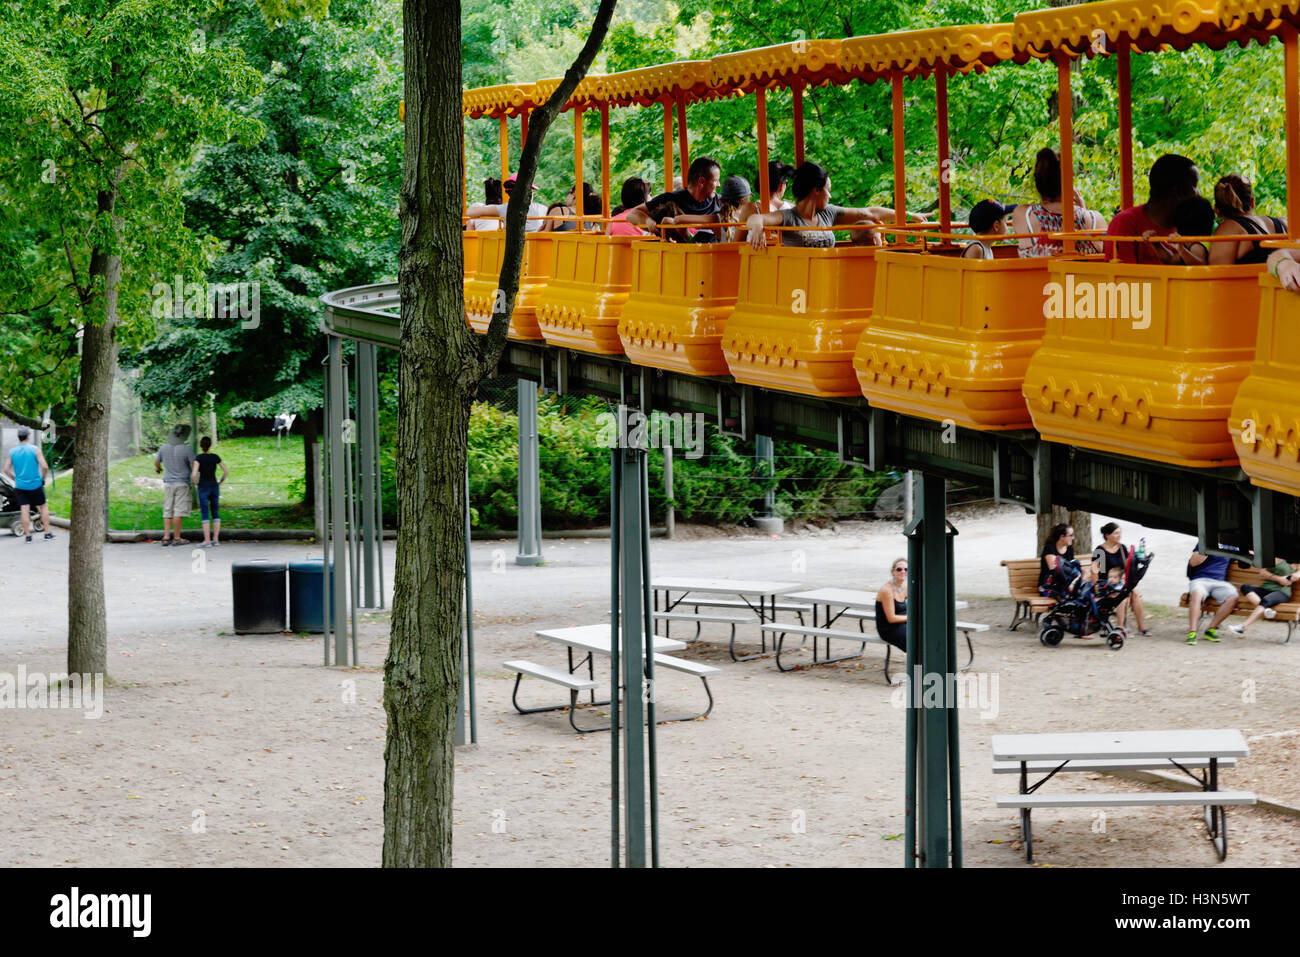 Le monorail au Zoo de Granby au Québec Banque D'Images